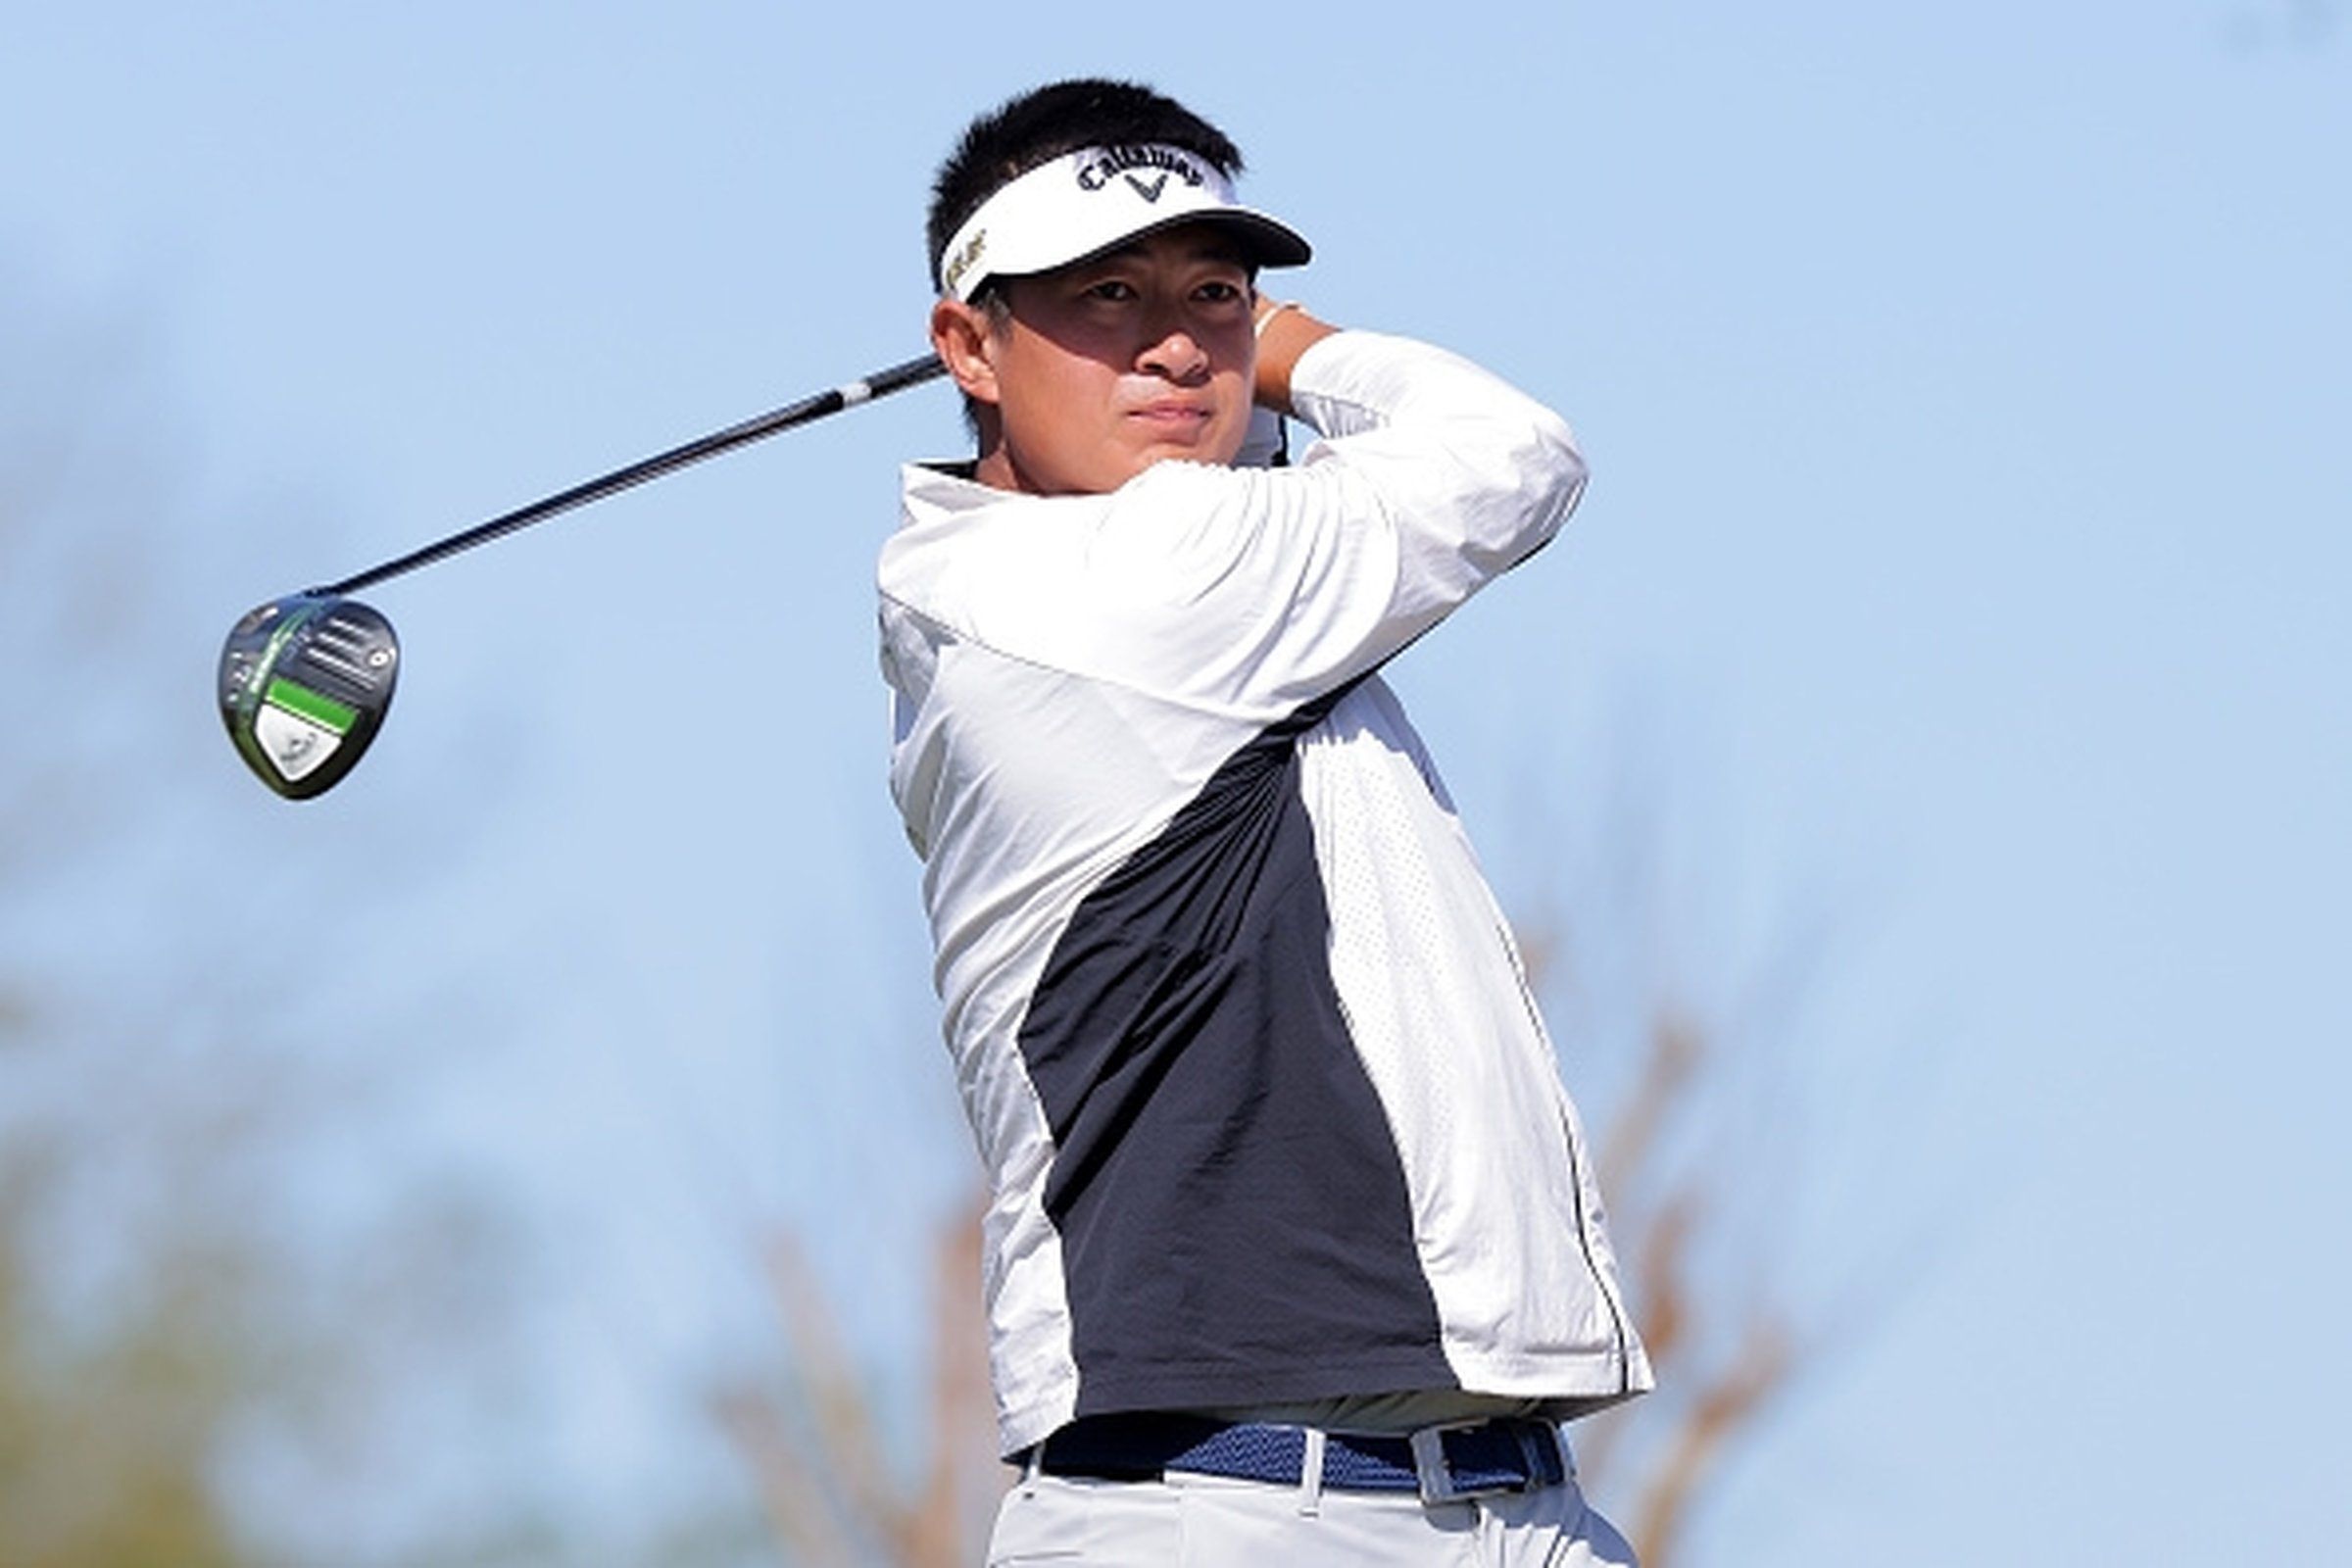 Former UW Husky Carl Yuan has PGA Tour card waiting, but wants to finish No